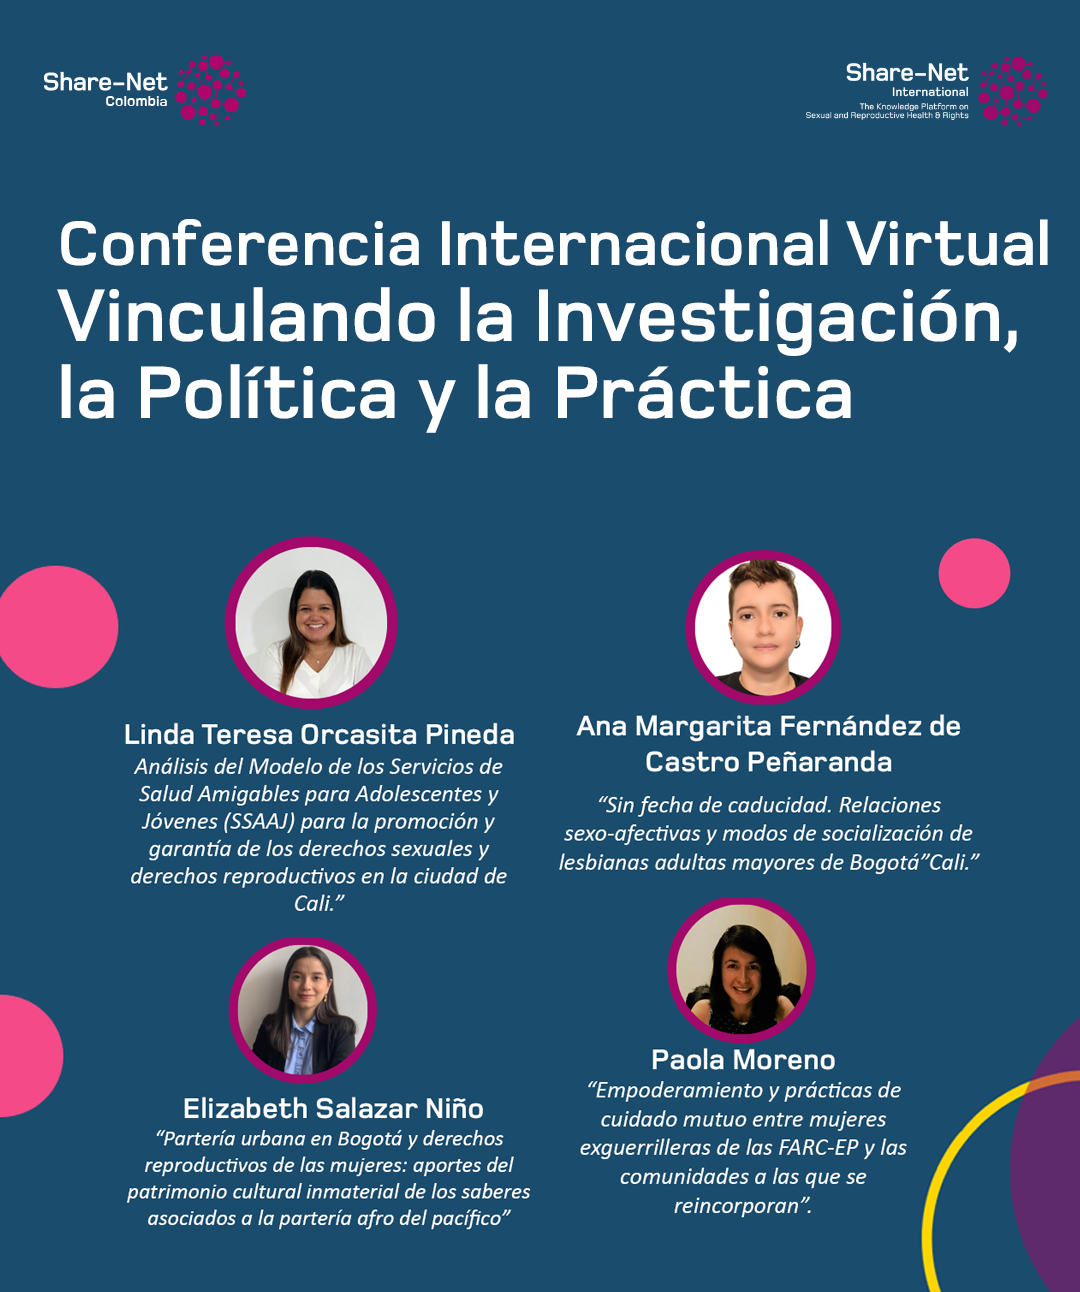 Conferencia Internacional Virtual “Vinculando la Investigación, la Política y la Práctica”